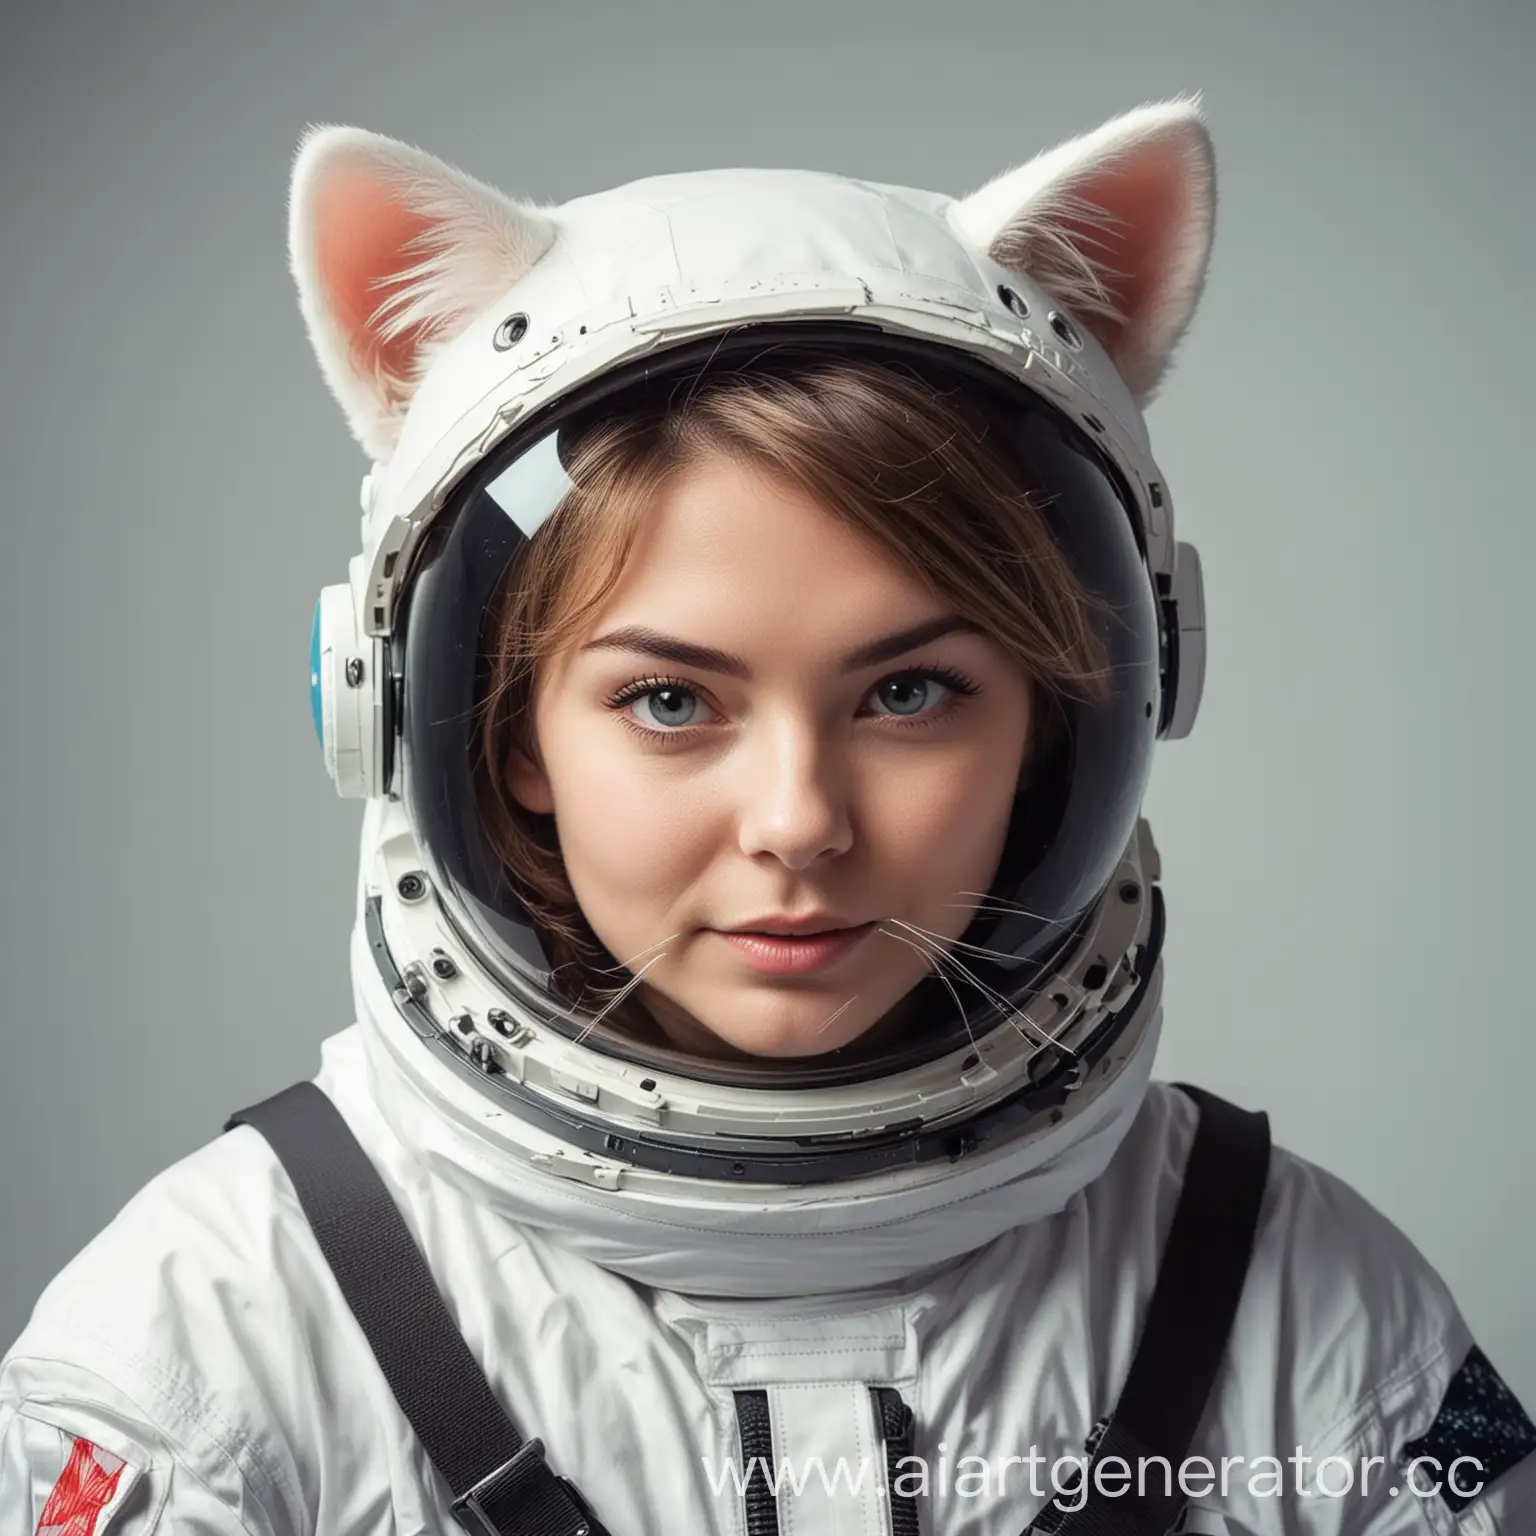 Astronaut-in-Sea-Helmet-with-Cat-Ears-Exploring-Alien-Waters